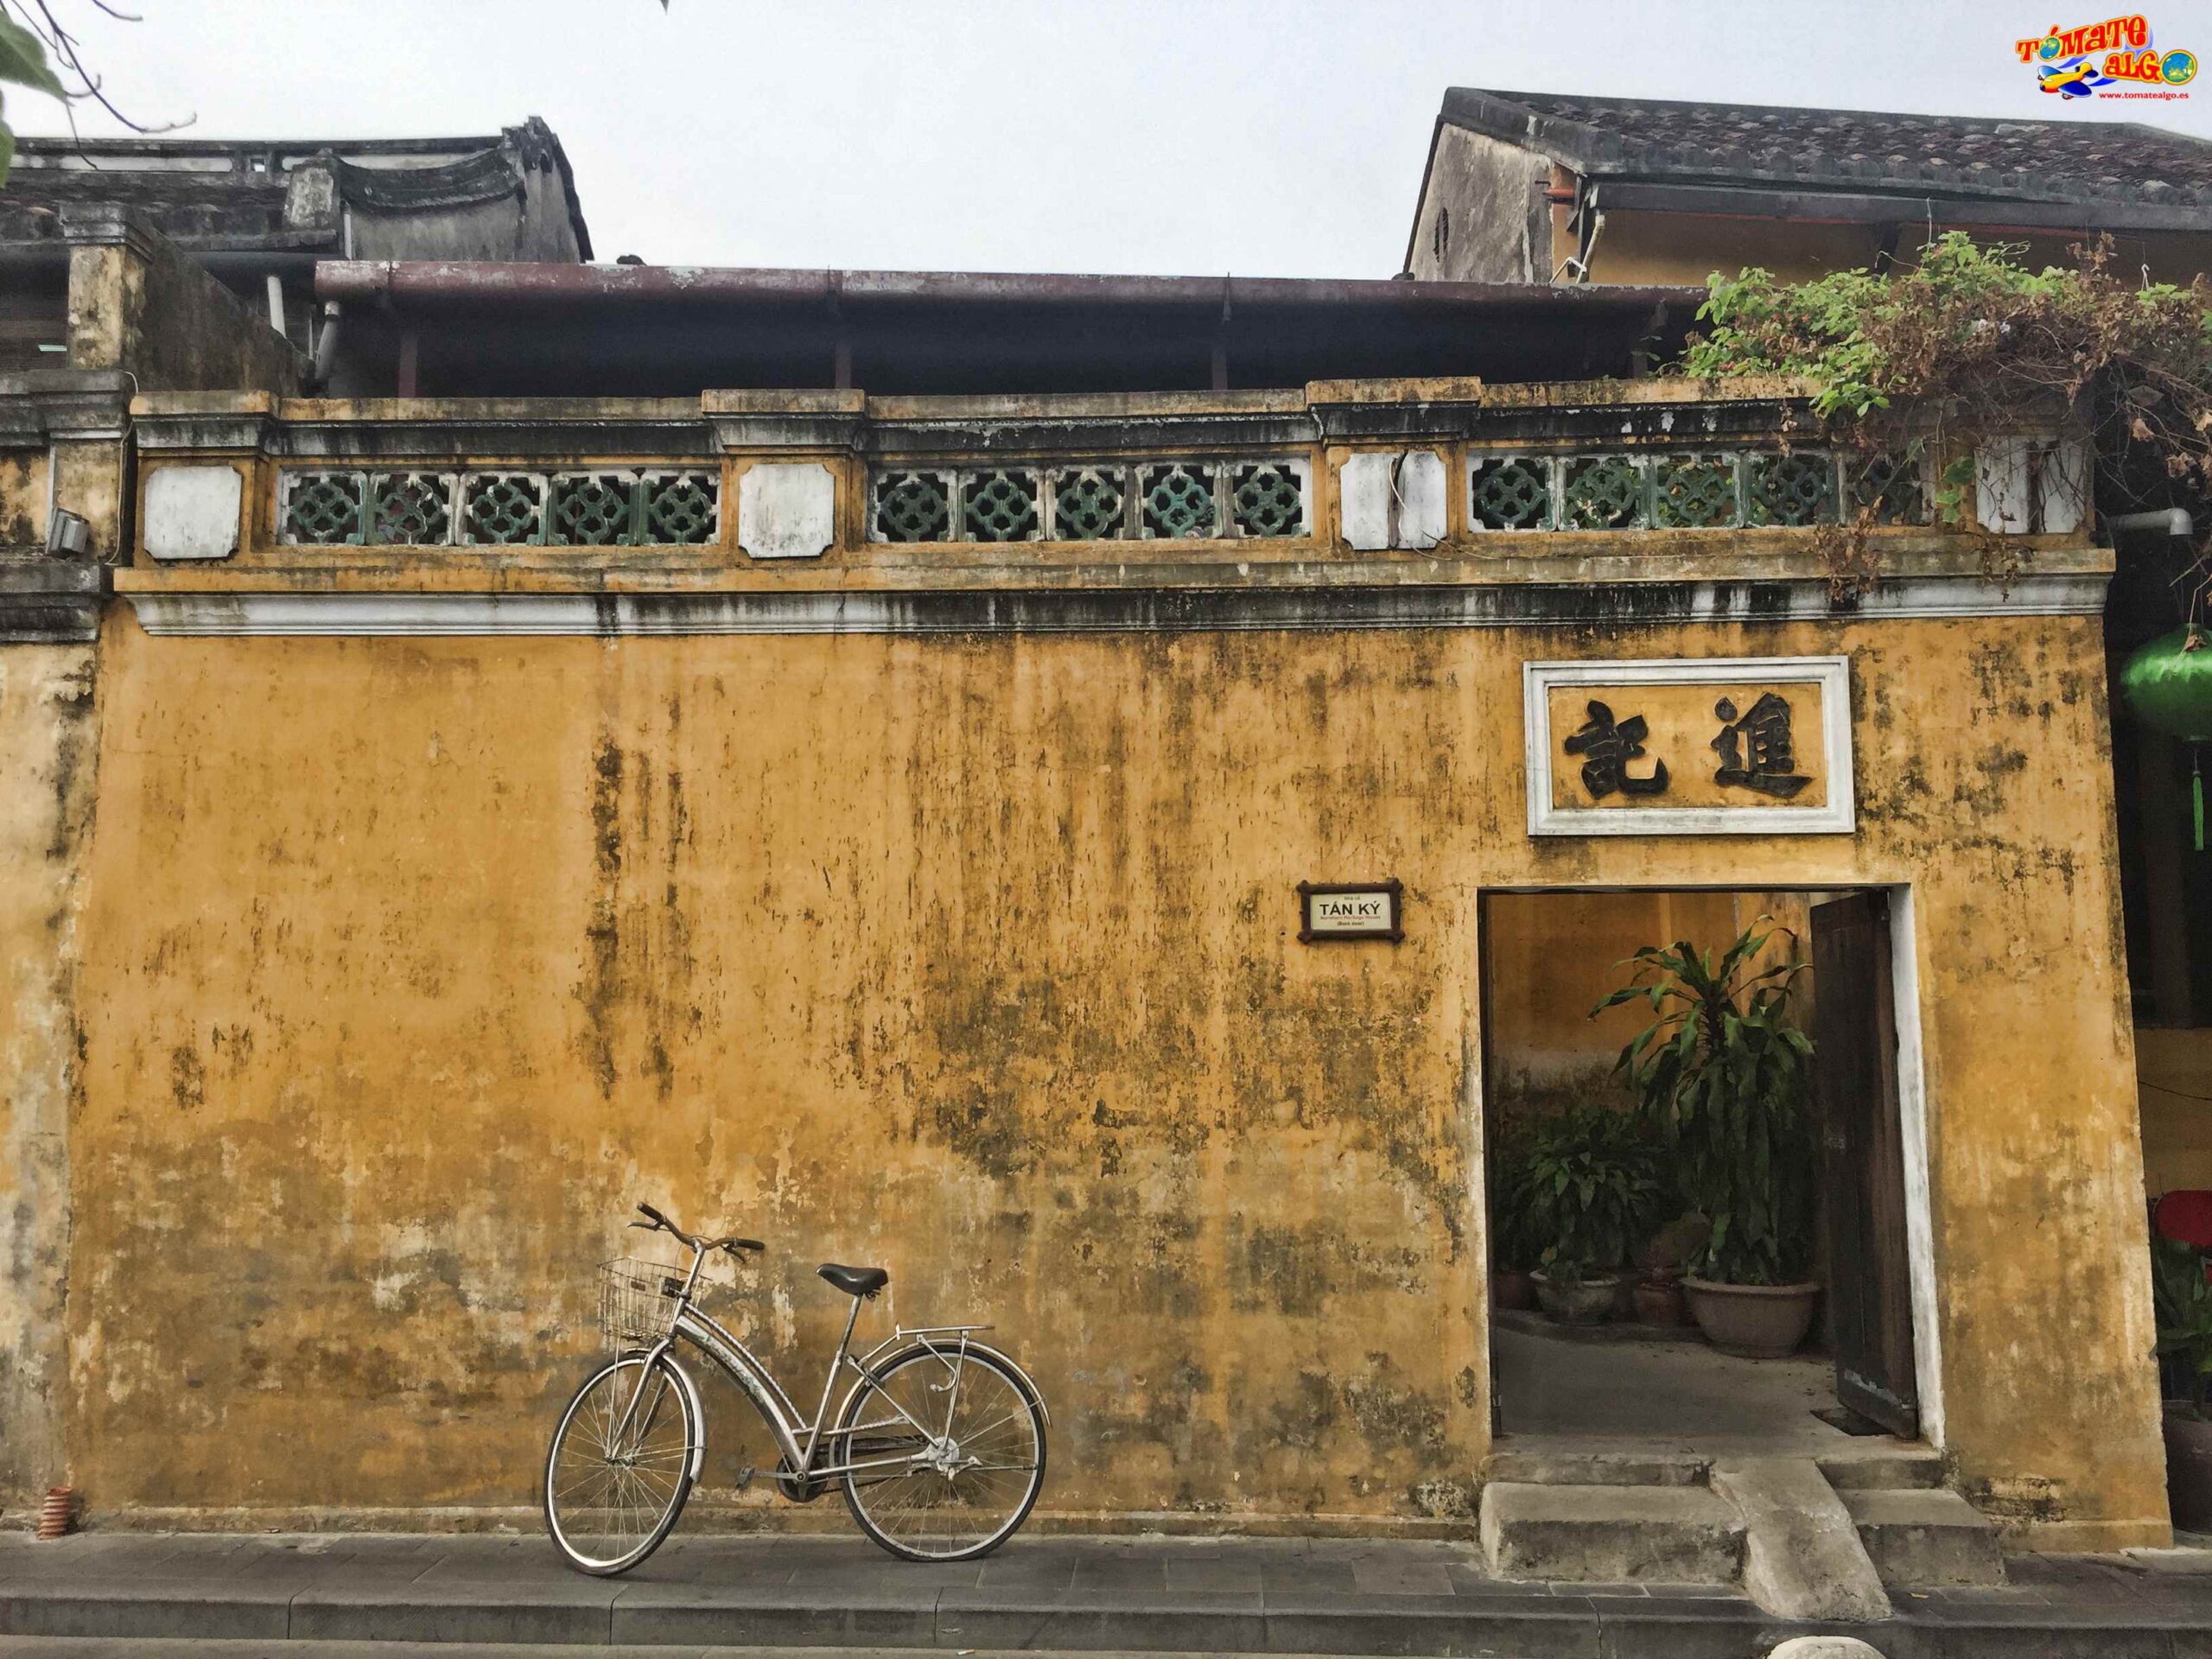 La fachada de la casa de Tan Ky